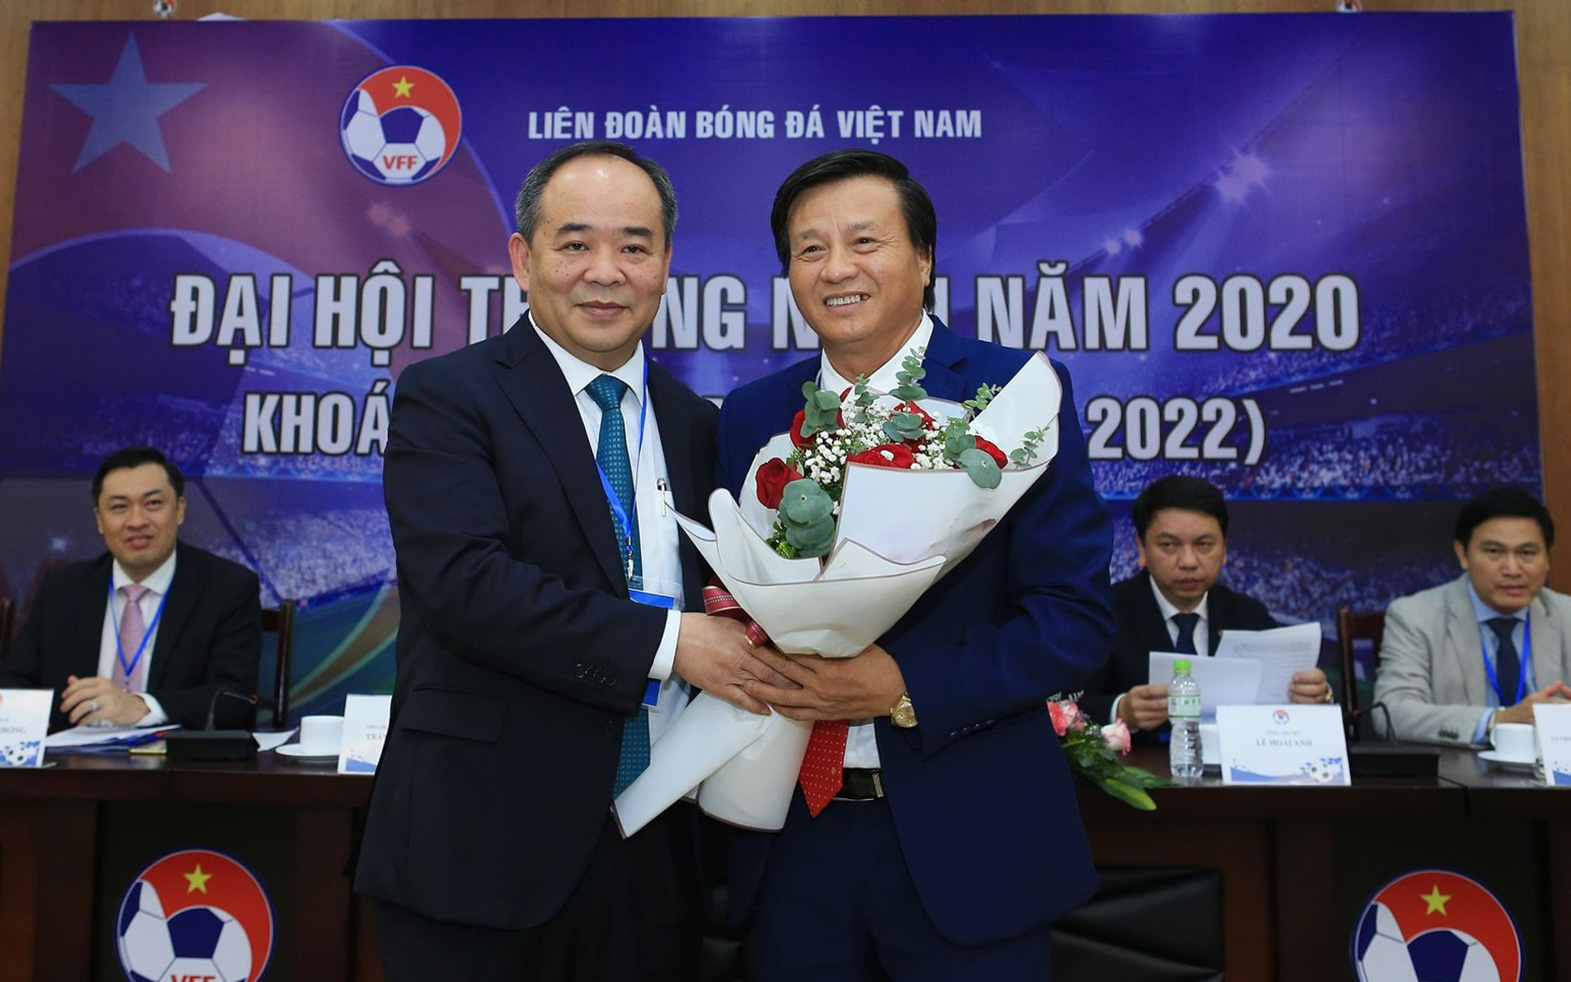 Liên đoàn bóng đá Việt Nam có Phó chủ tịch phụ trách Tài chính mới, đề ra kế hoạch tổ chức 2 trận đấu đặc biệt vào cuối năm 2020